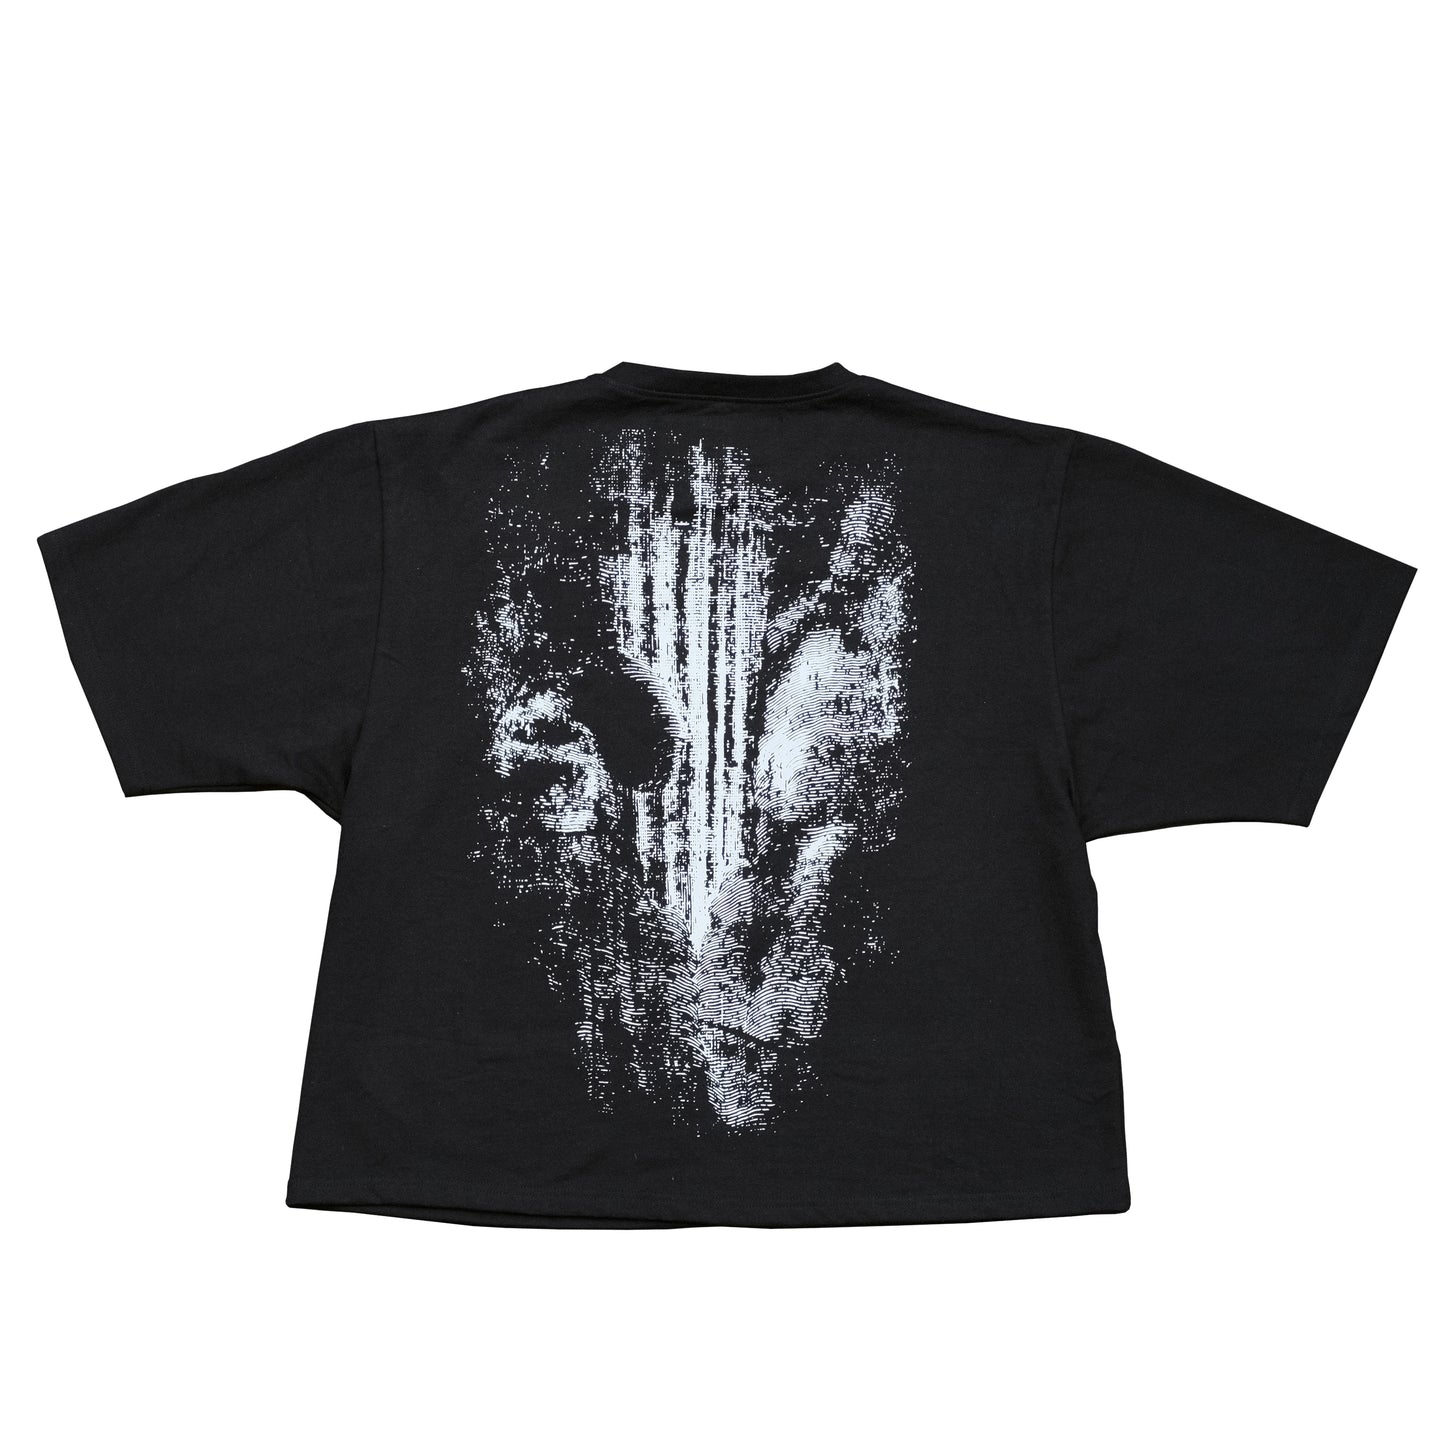 Black Oversized T-Shirt "smoke signal"